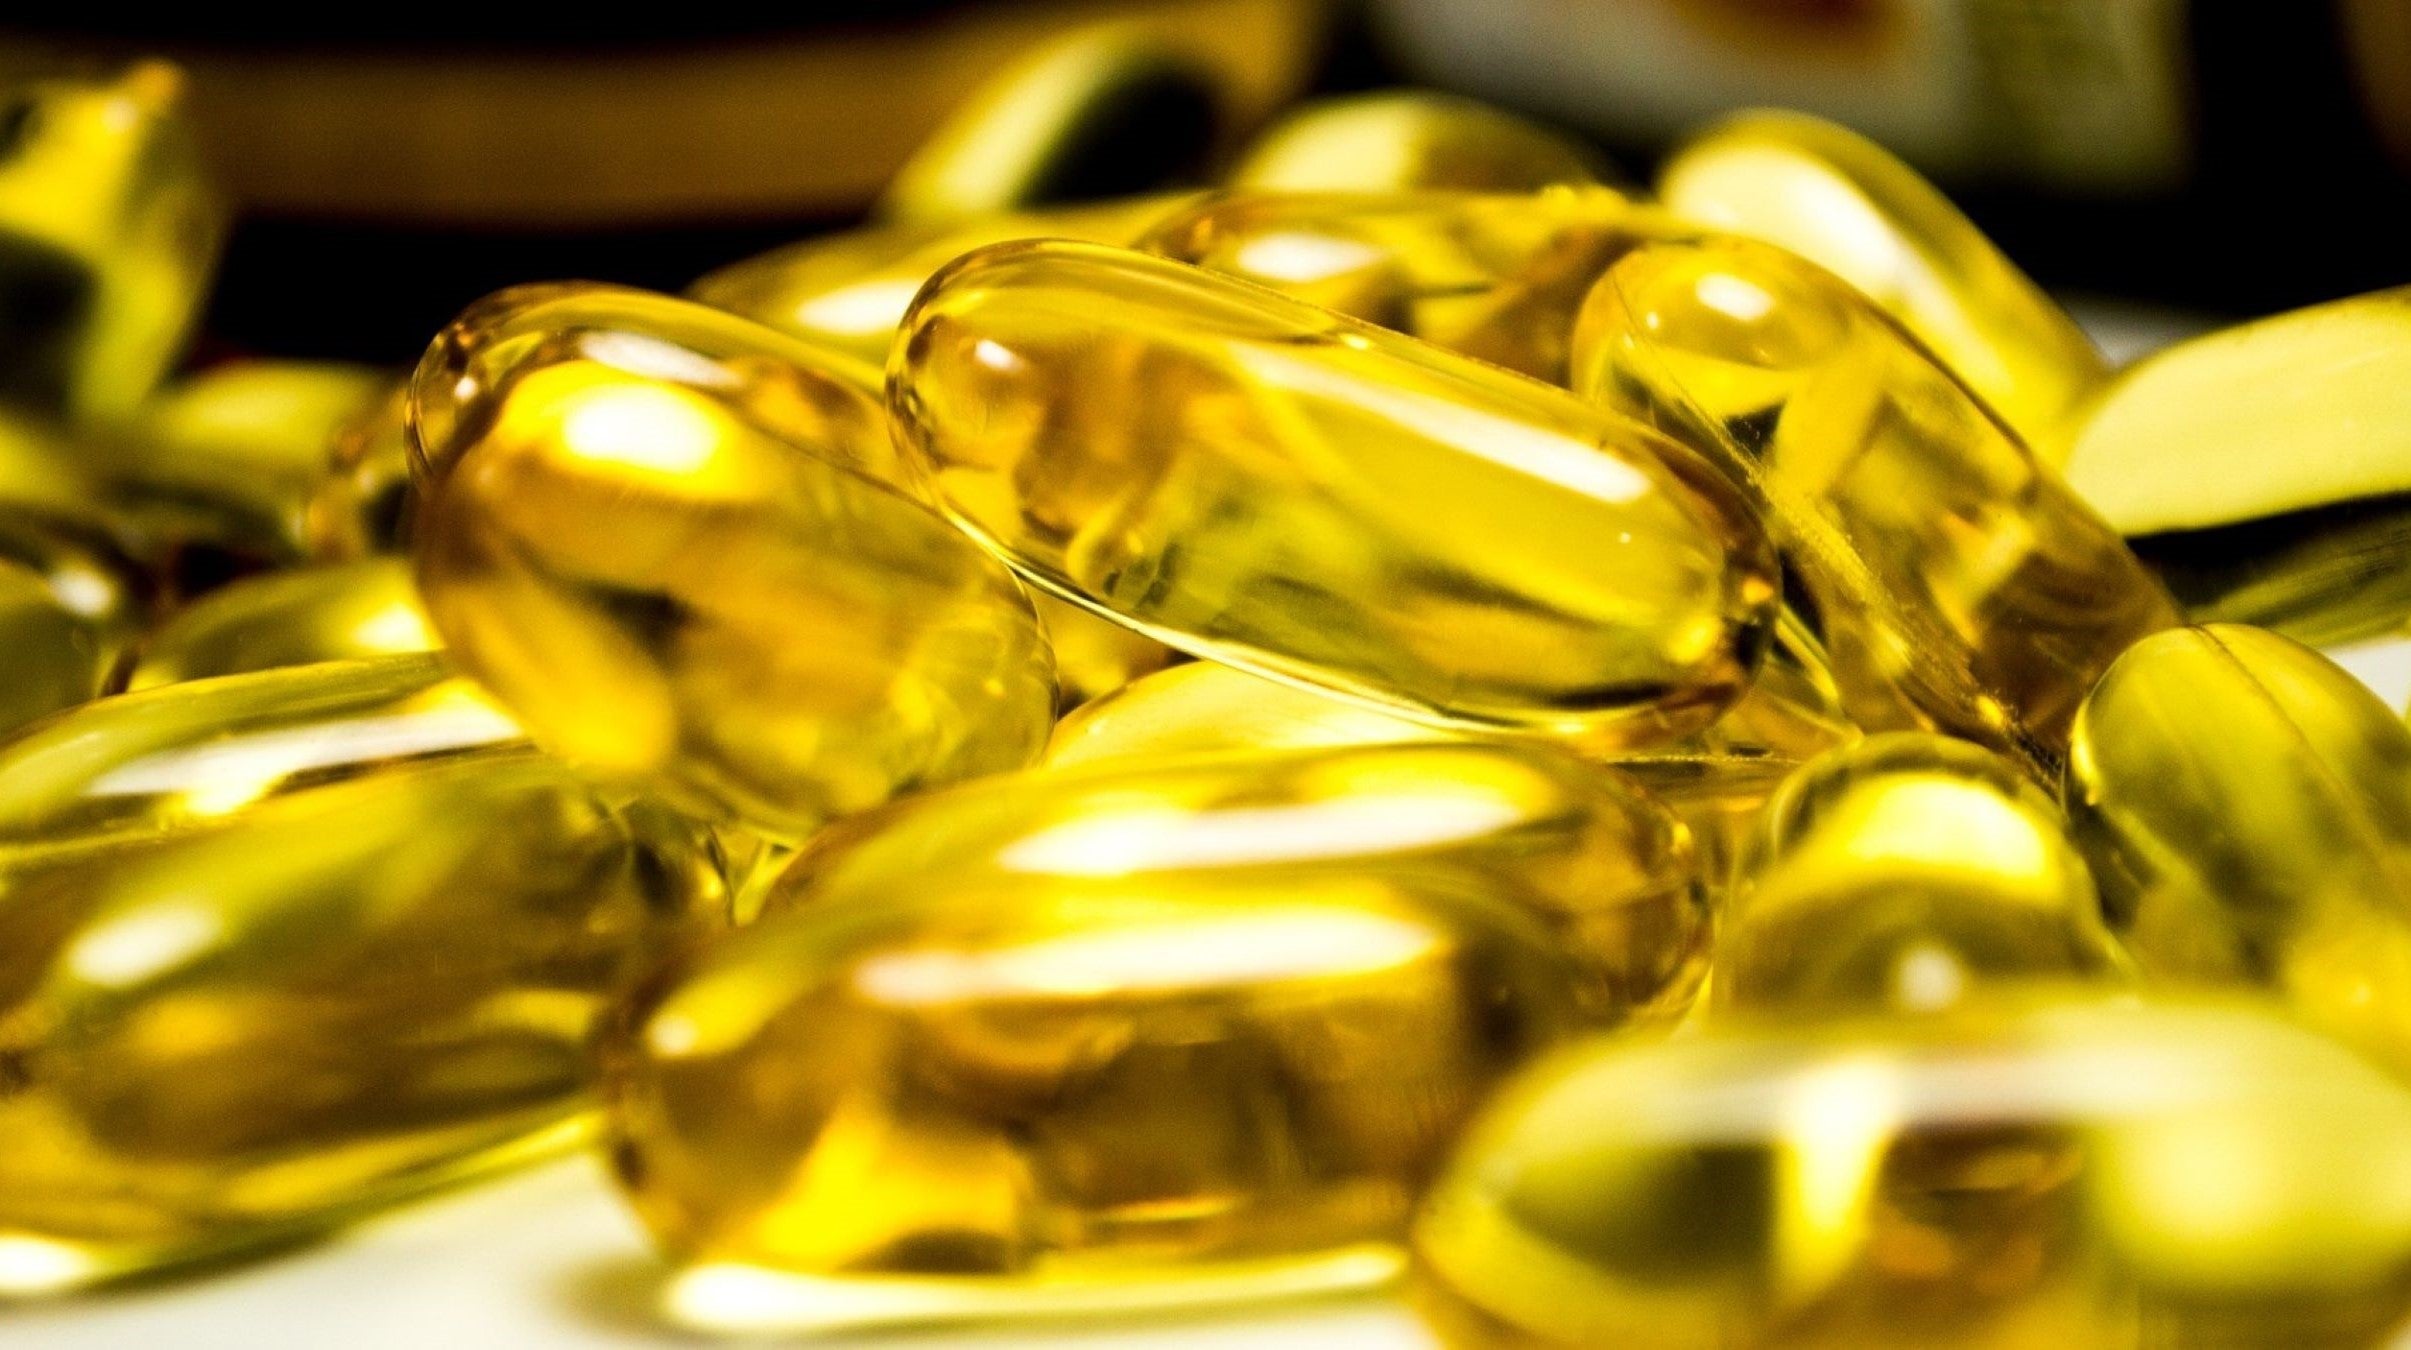 Pile of dietary supplement capsules containing golden liquid omega 3